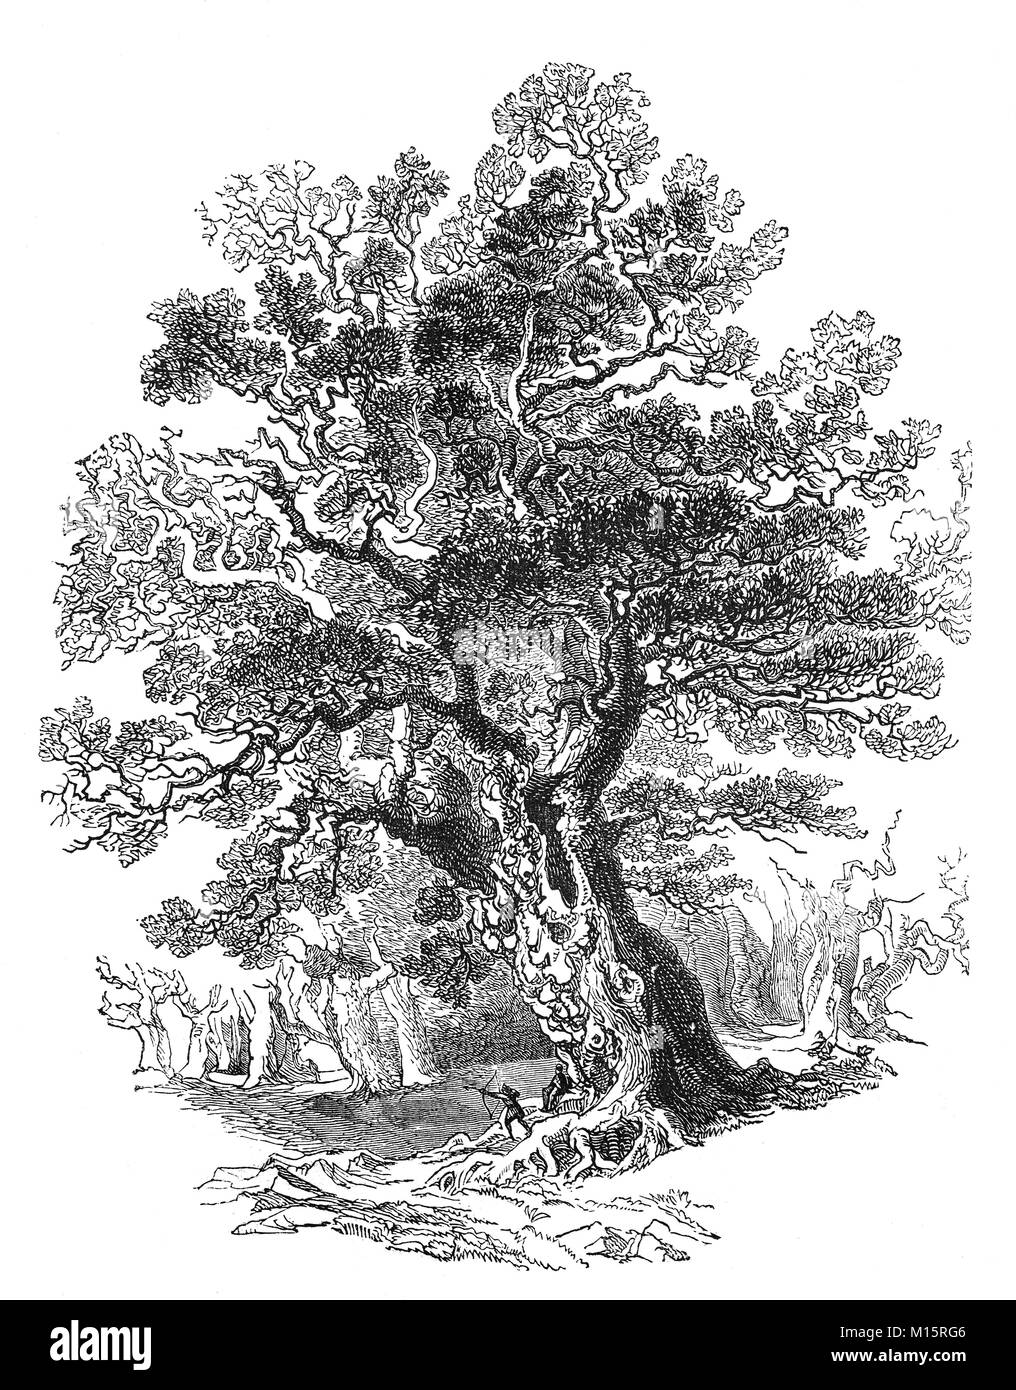 La forêt 'king'. L'un des chênes dans la forêt de Sherwood, dans le Nottinghamshire au moment de Robin Hood, généralement pensés pour être au 14e siècle en Angleterre. Banque D'Images